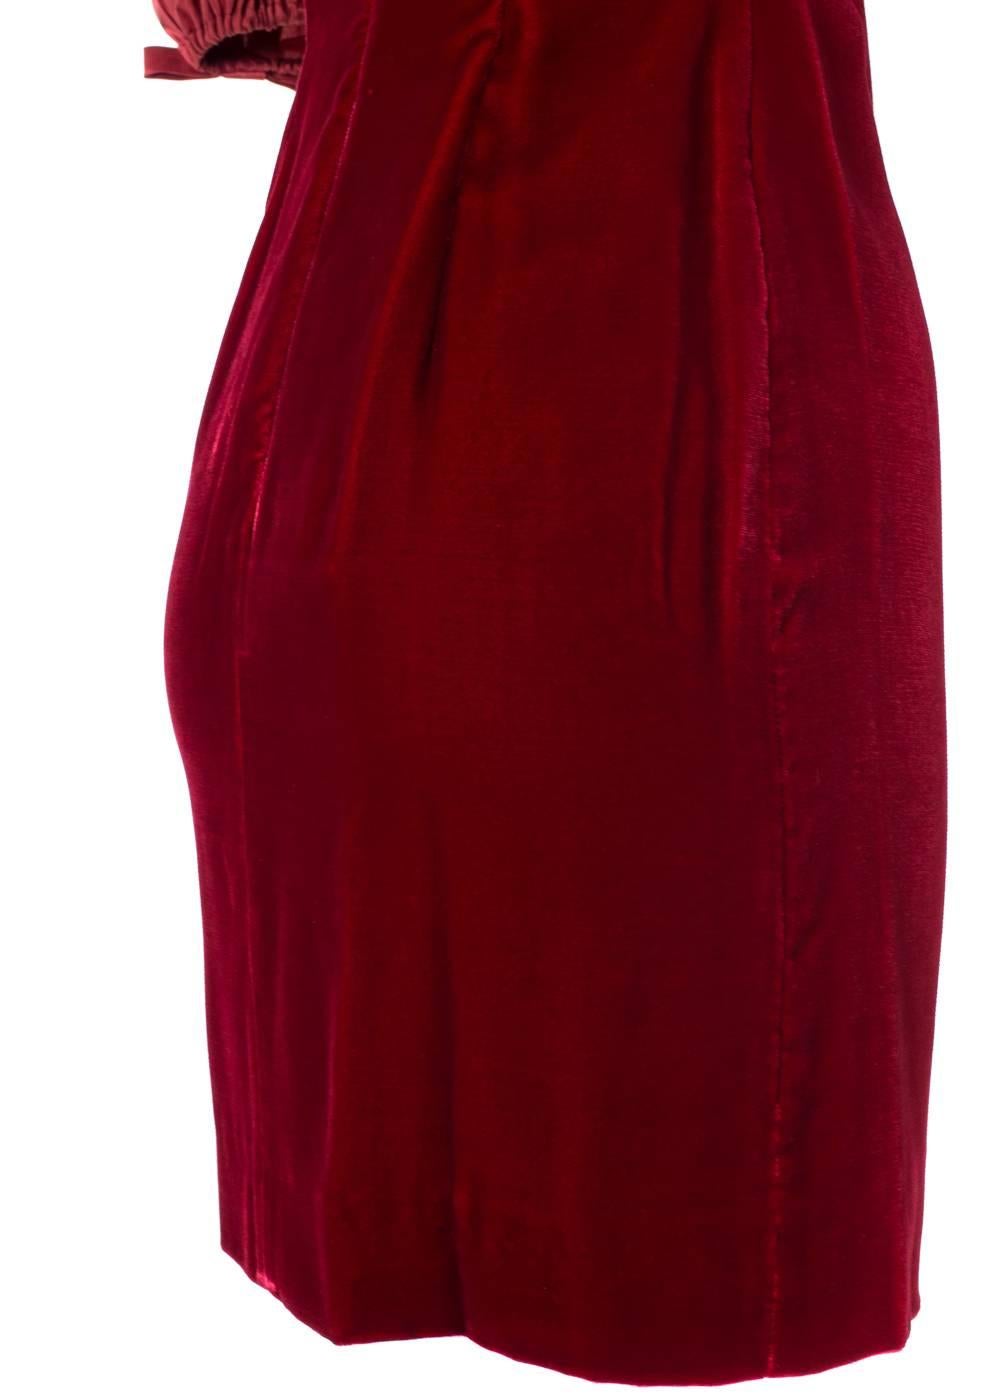 red velvet spaghetti strap dress